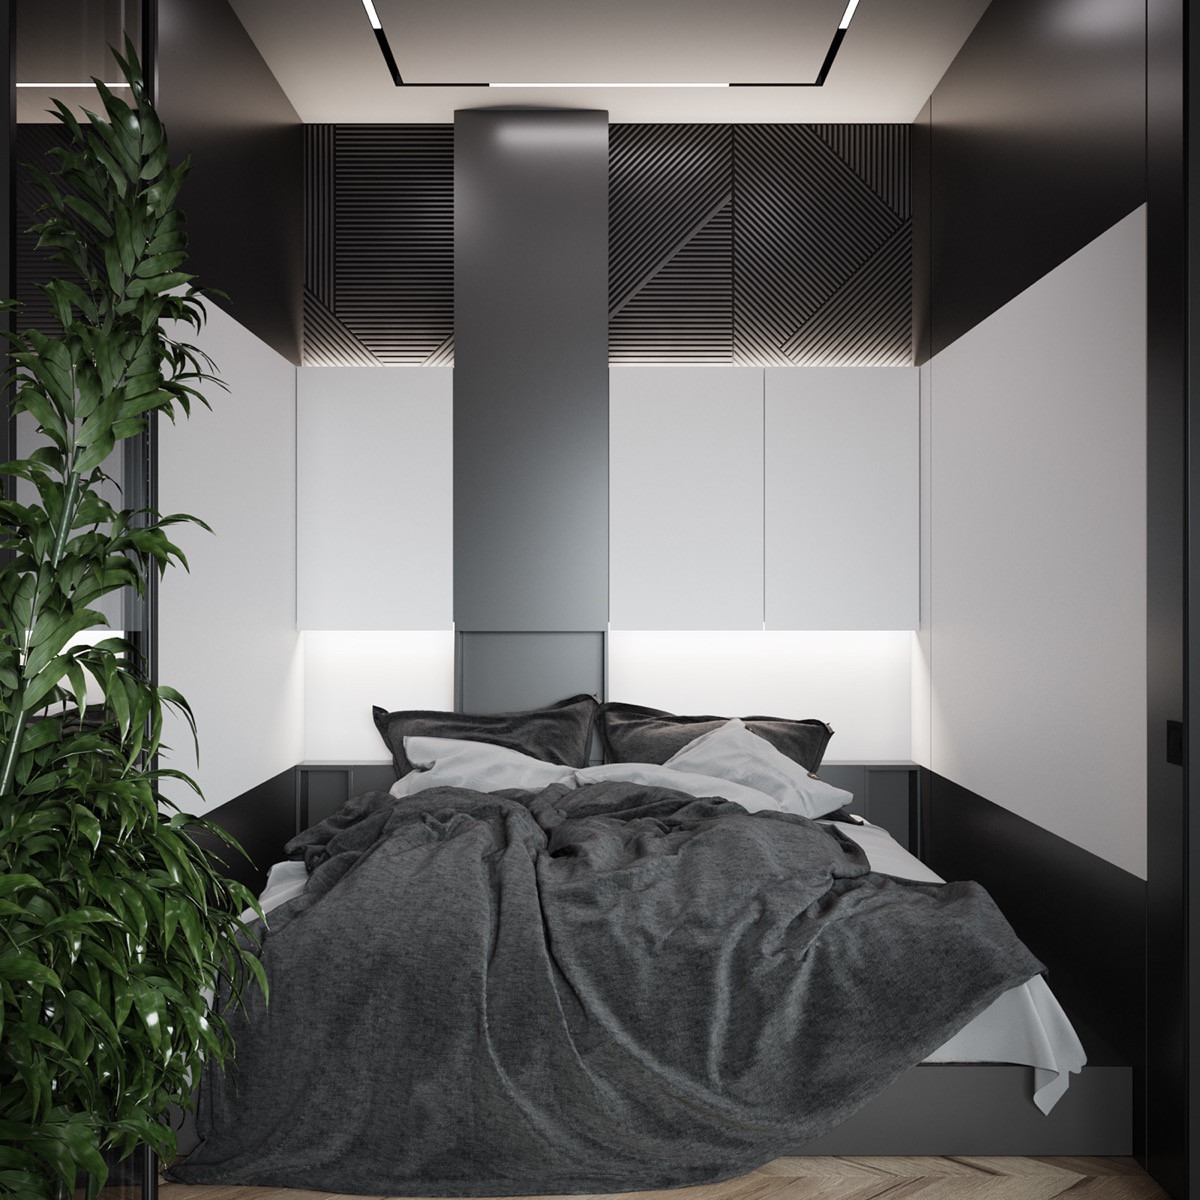 Hình ảnh cận cảnh phòng ngủ với ga gối màu xám, đen, cây xanh trang trí, đèn LED đầu giường